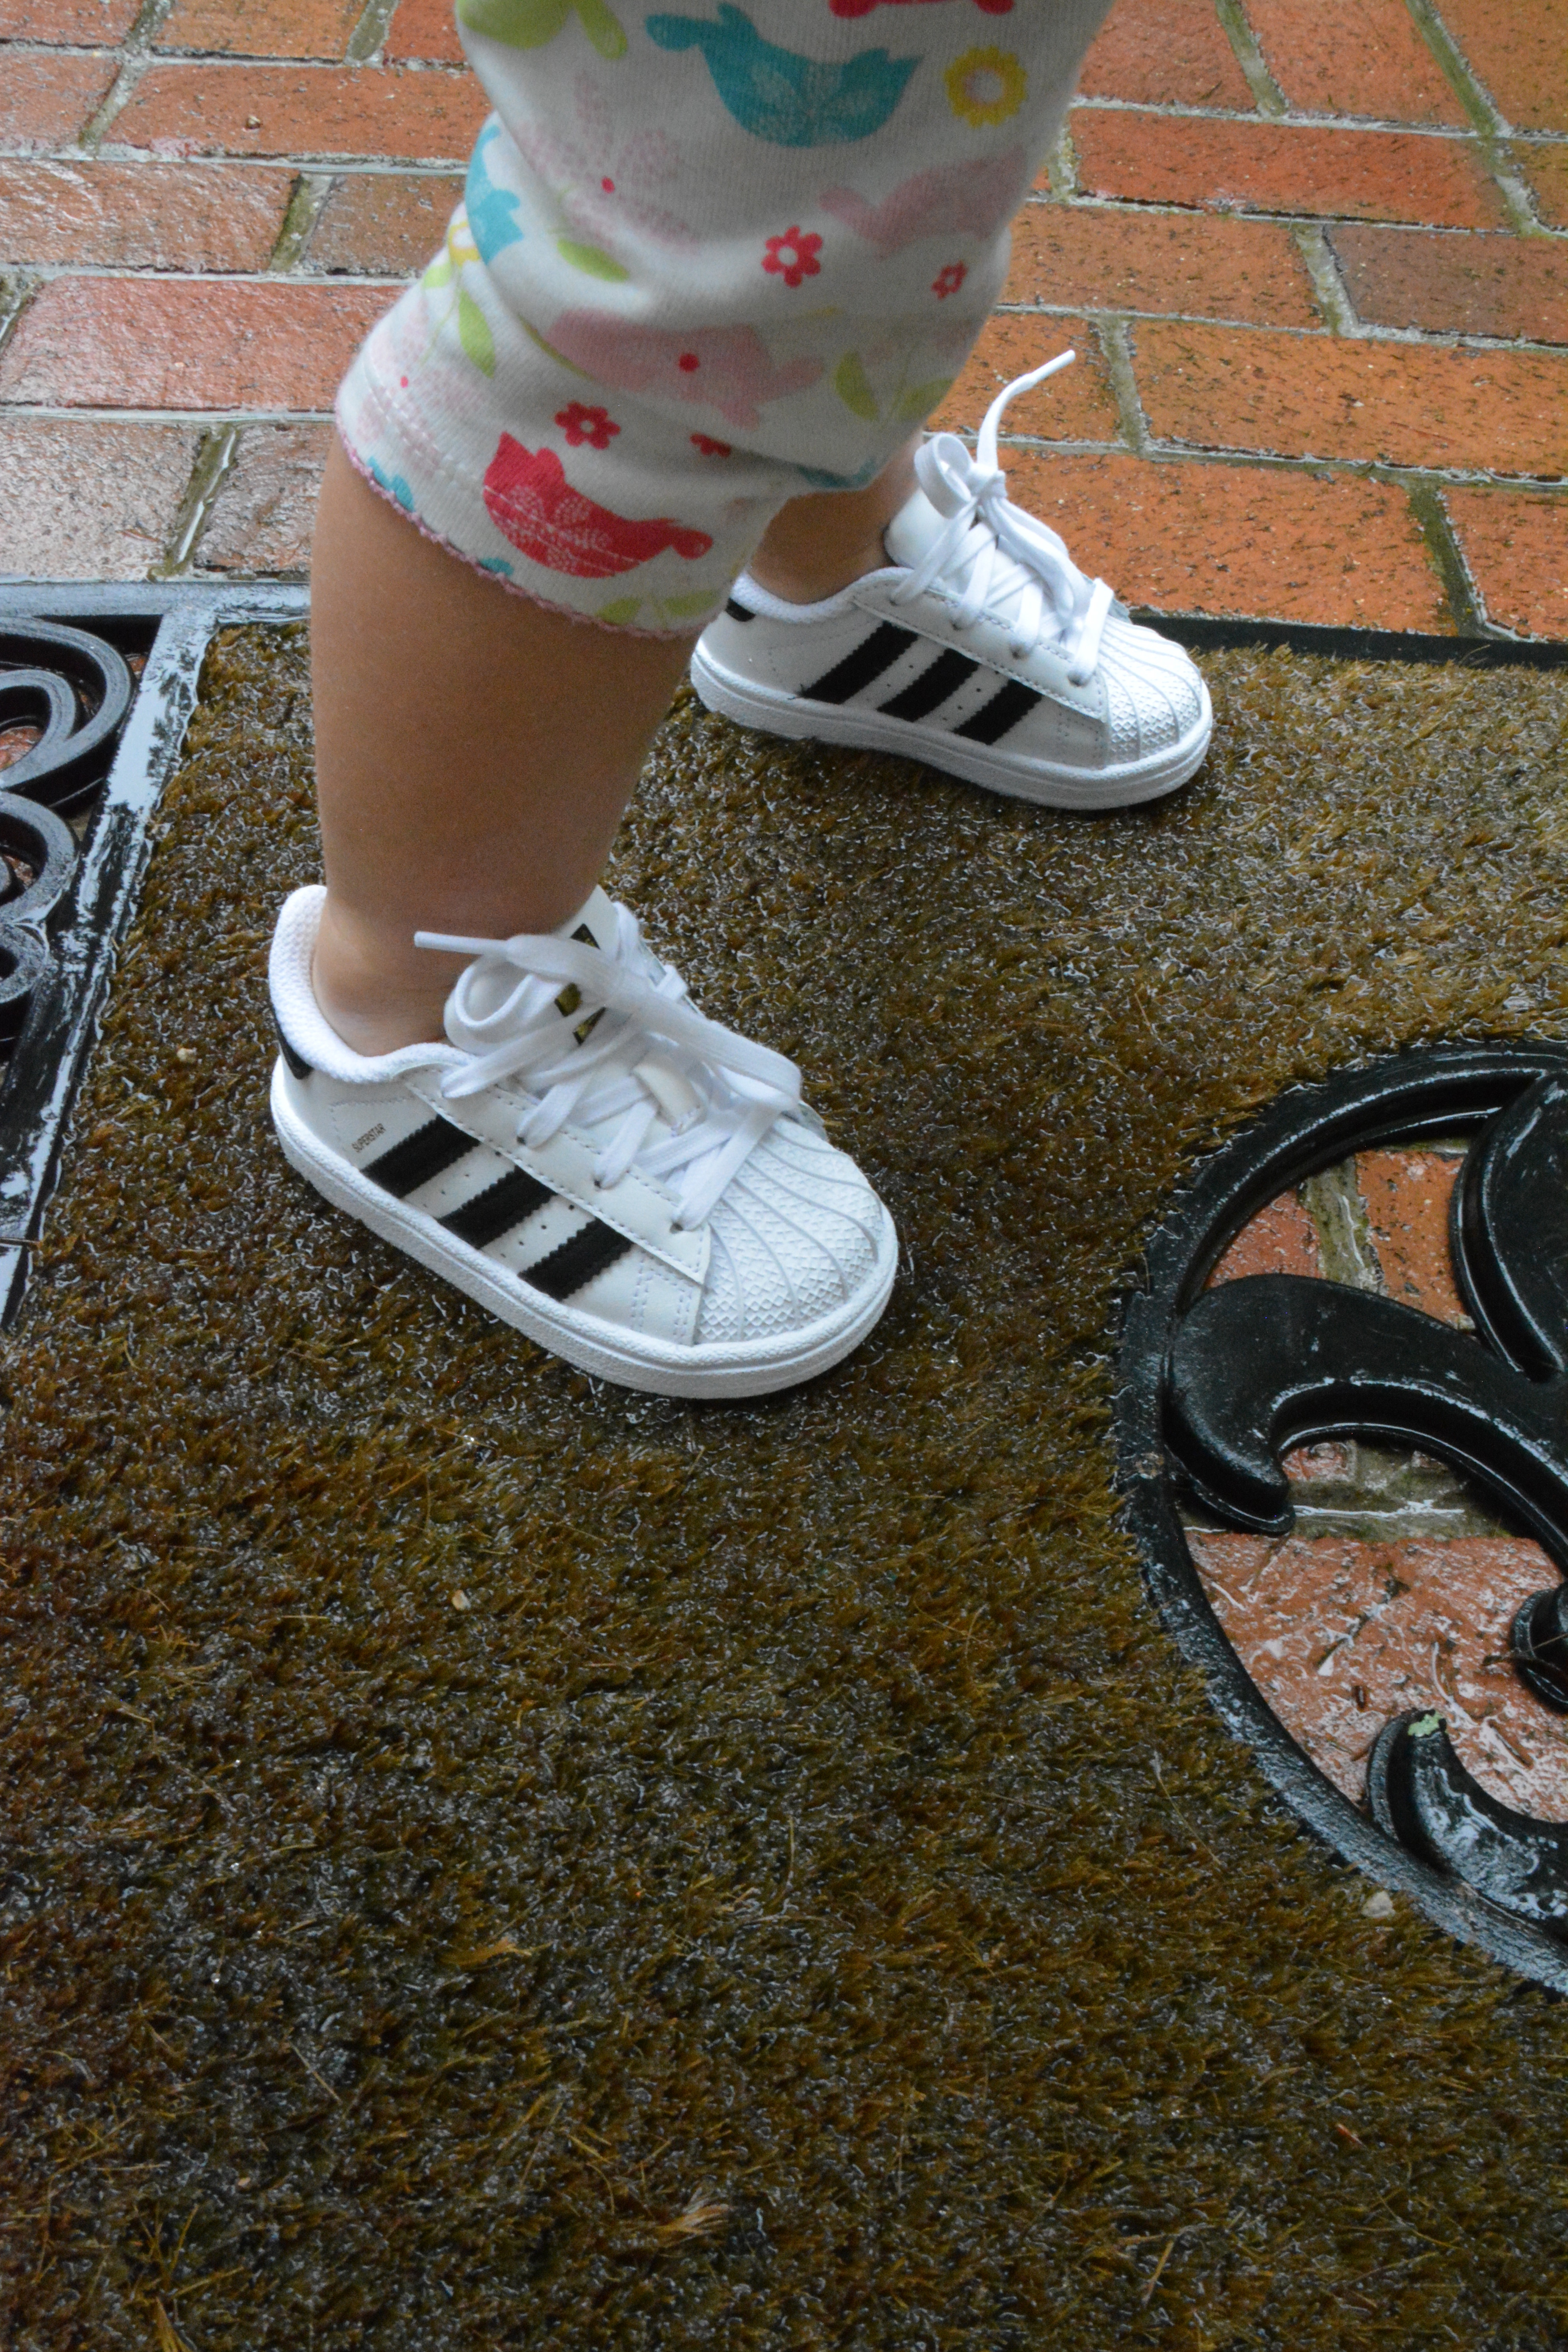 footlocker infants shoes